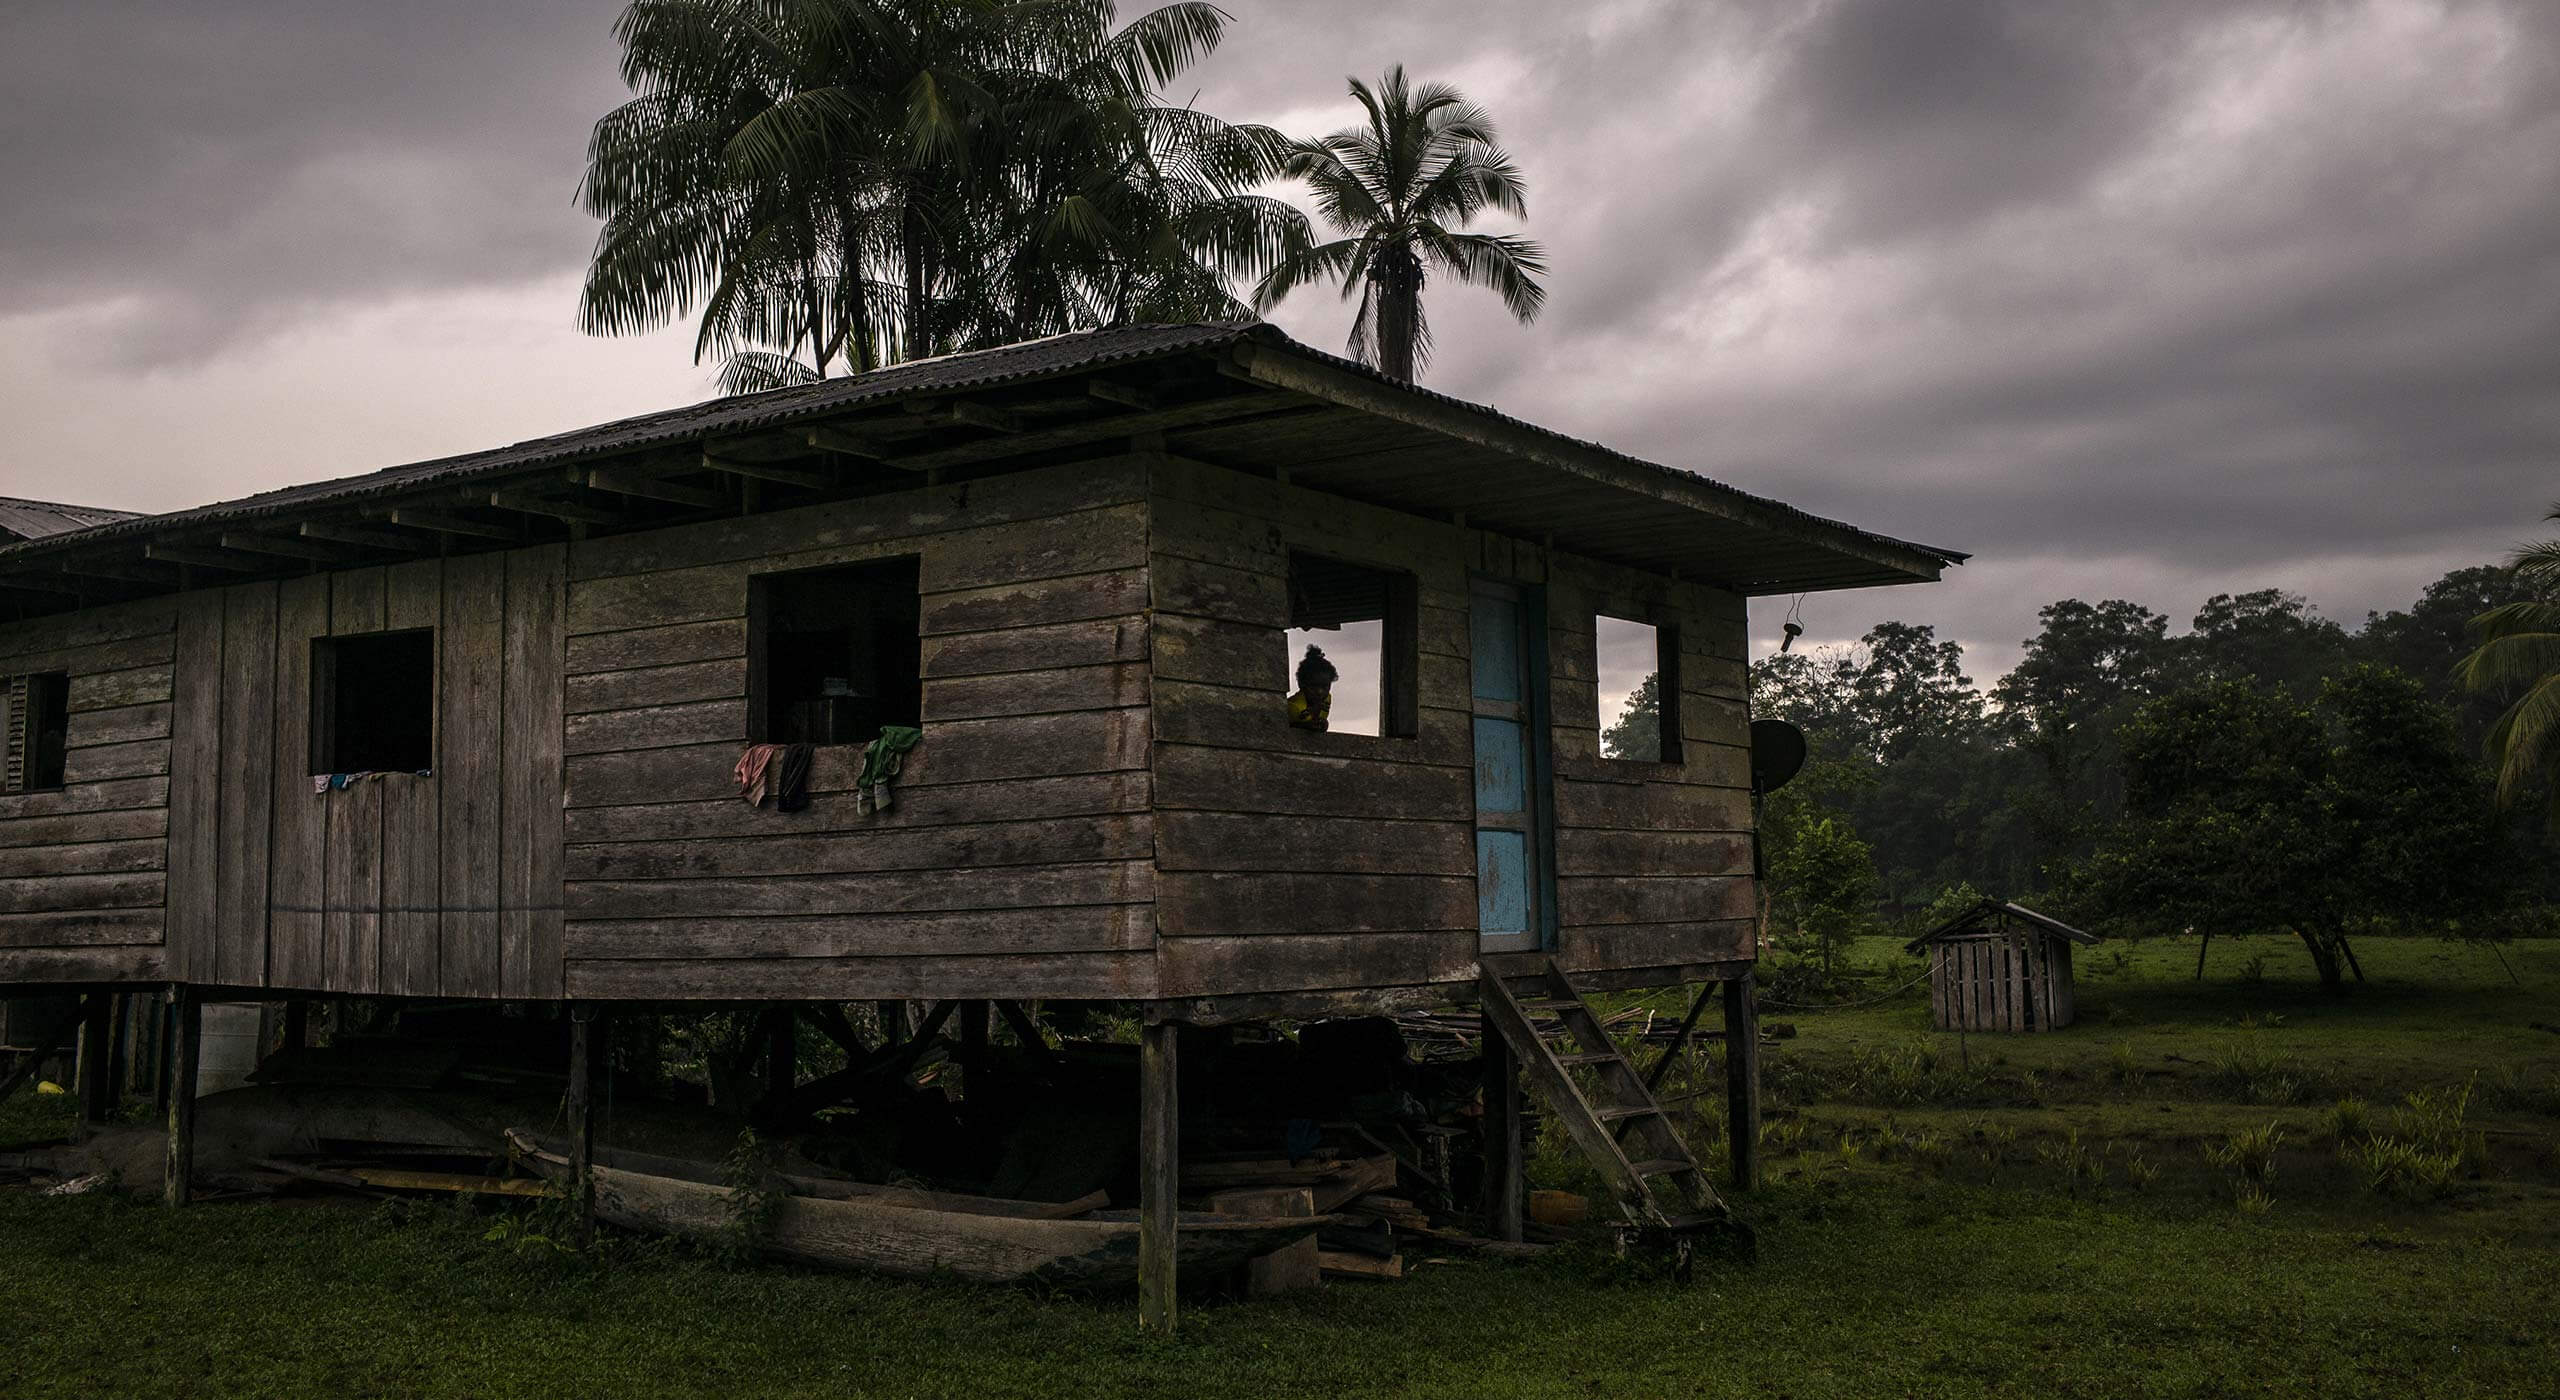 Holzhaus in Kolumbien, Foto von Dominic Nahr, Fotoausstellung 'ich lebe'